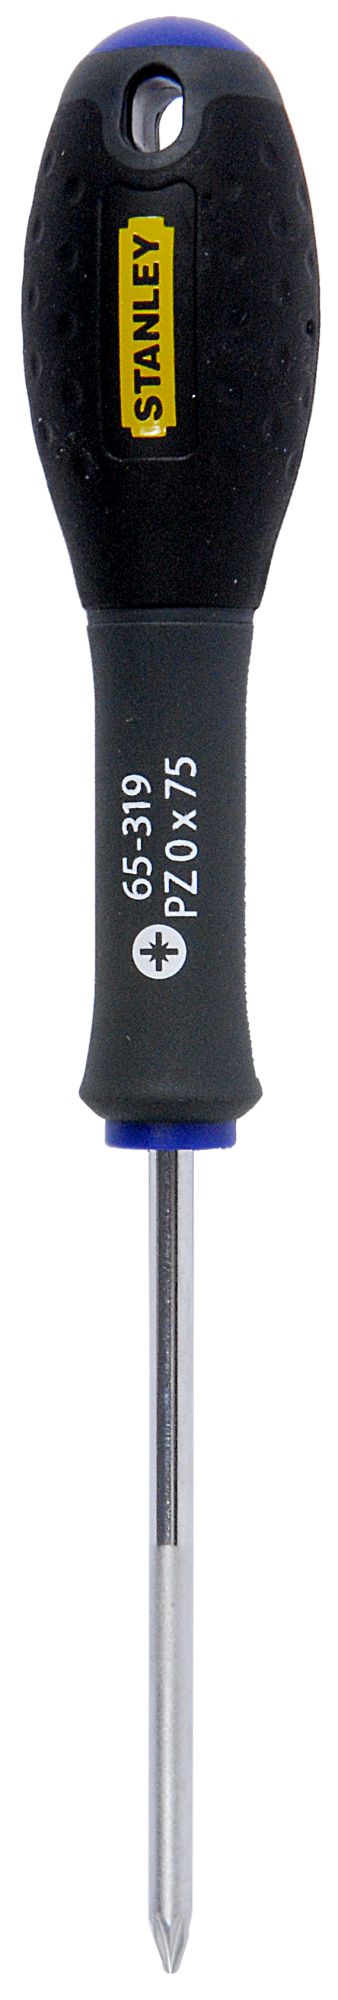 Destornillador FatMax®  PZ0 X 75 mm SBD-1-65-319 | DESTORNILLADORES